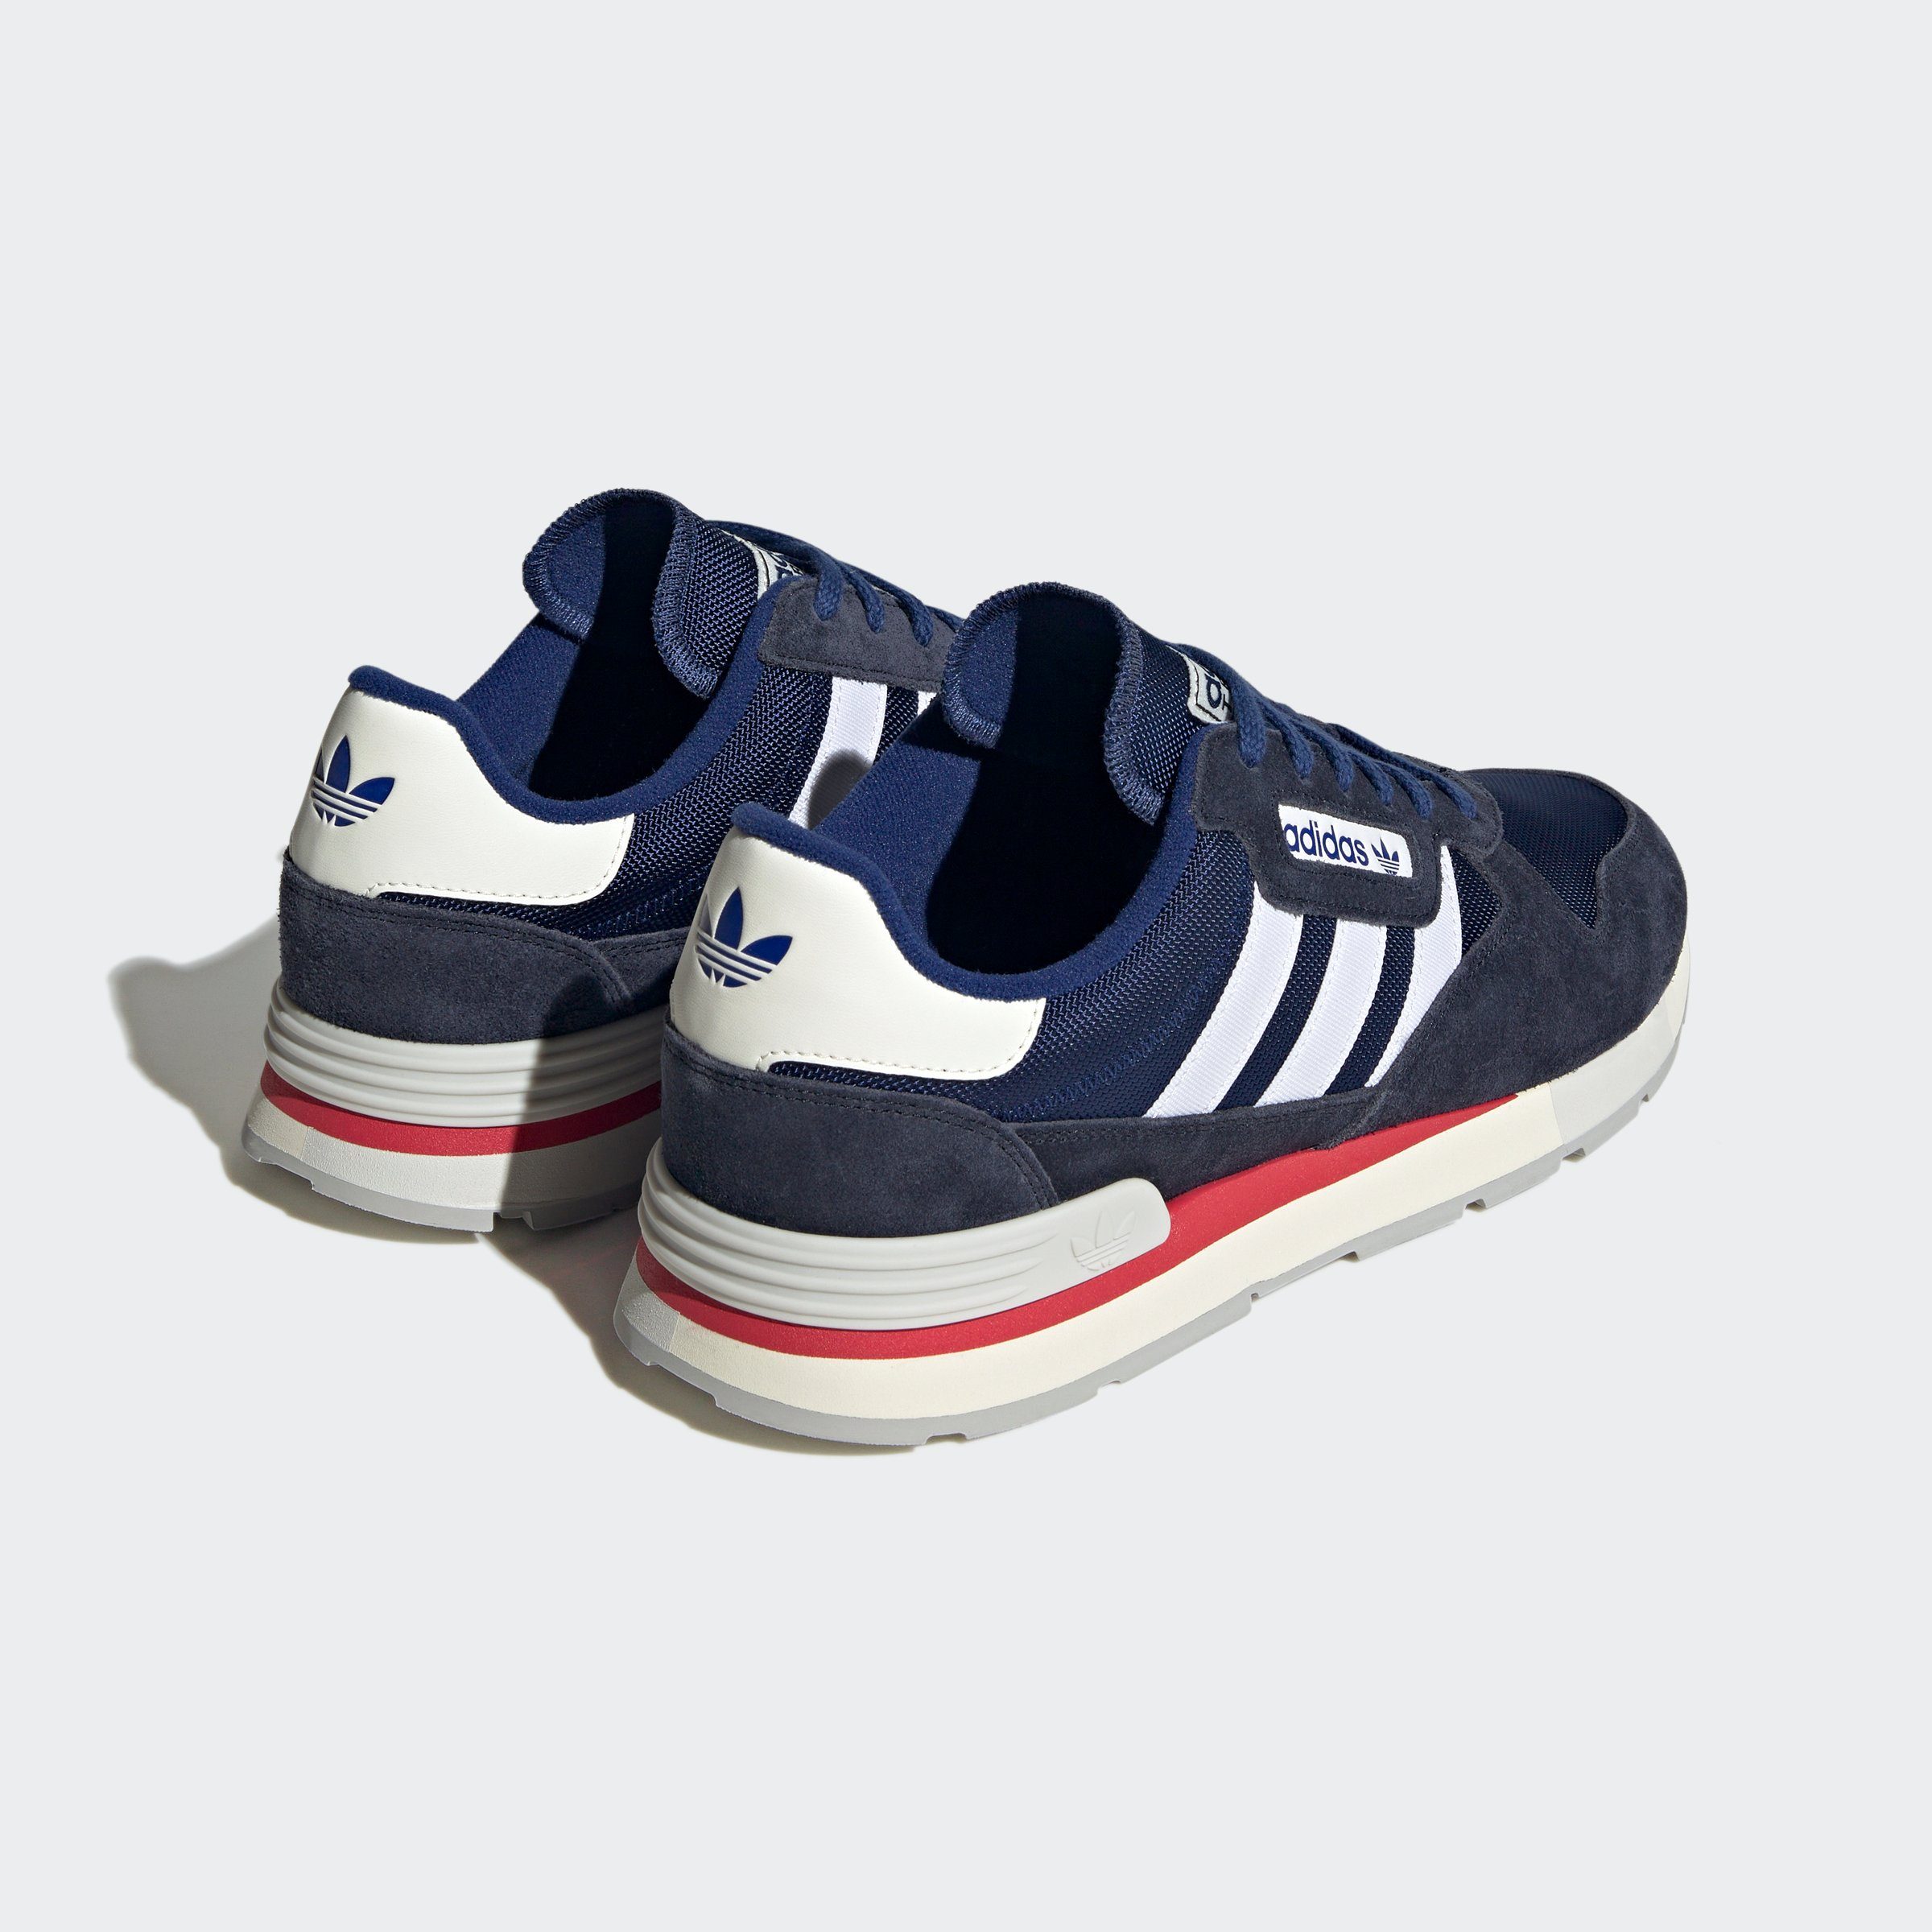 TREZIOD adidas Originals blauweissblau 2 Sneaker